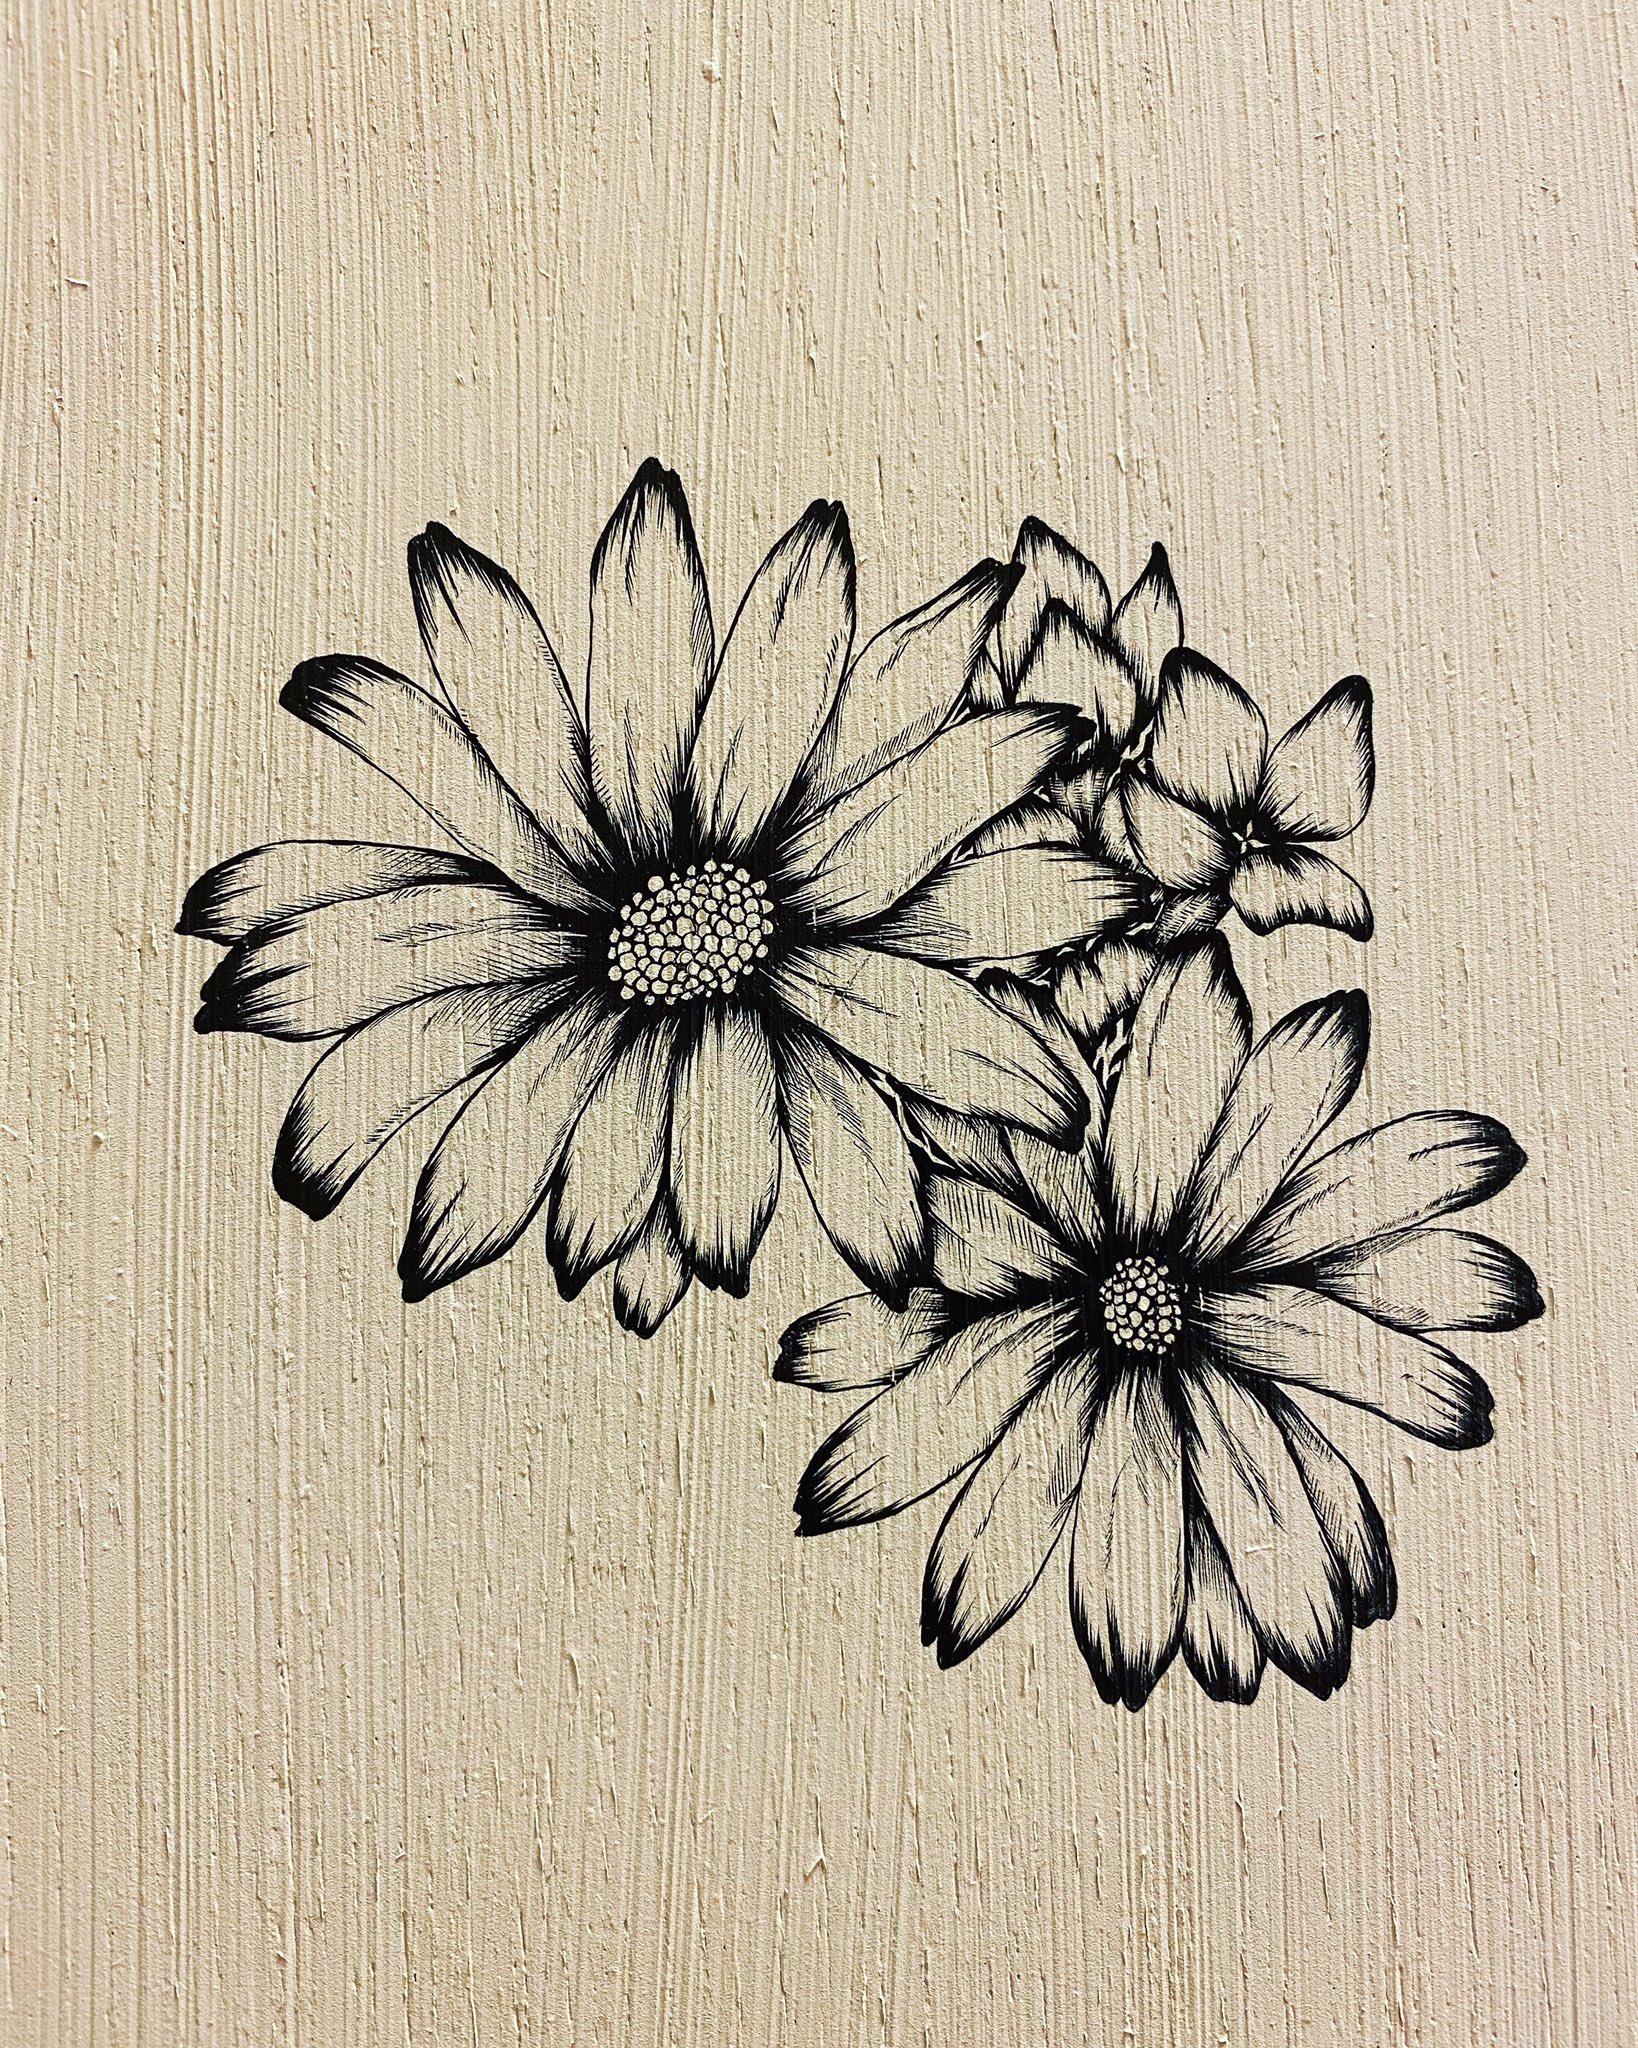 原 良輔 筆ペン画家 在 Twitter 上 花を描き始めました 筆ペン 一発描き 花 ペン画を流してペン画民を増やそう ペン画 Illustration Art 絵 絵描きの輪 花 T Co 5b2umapwpd Twitter